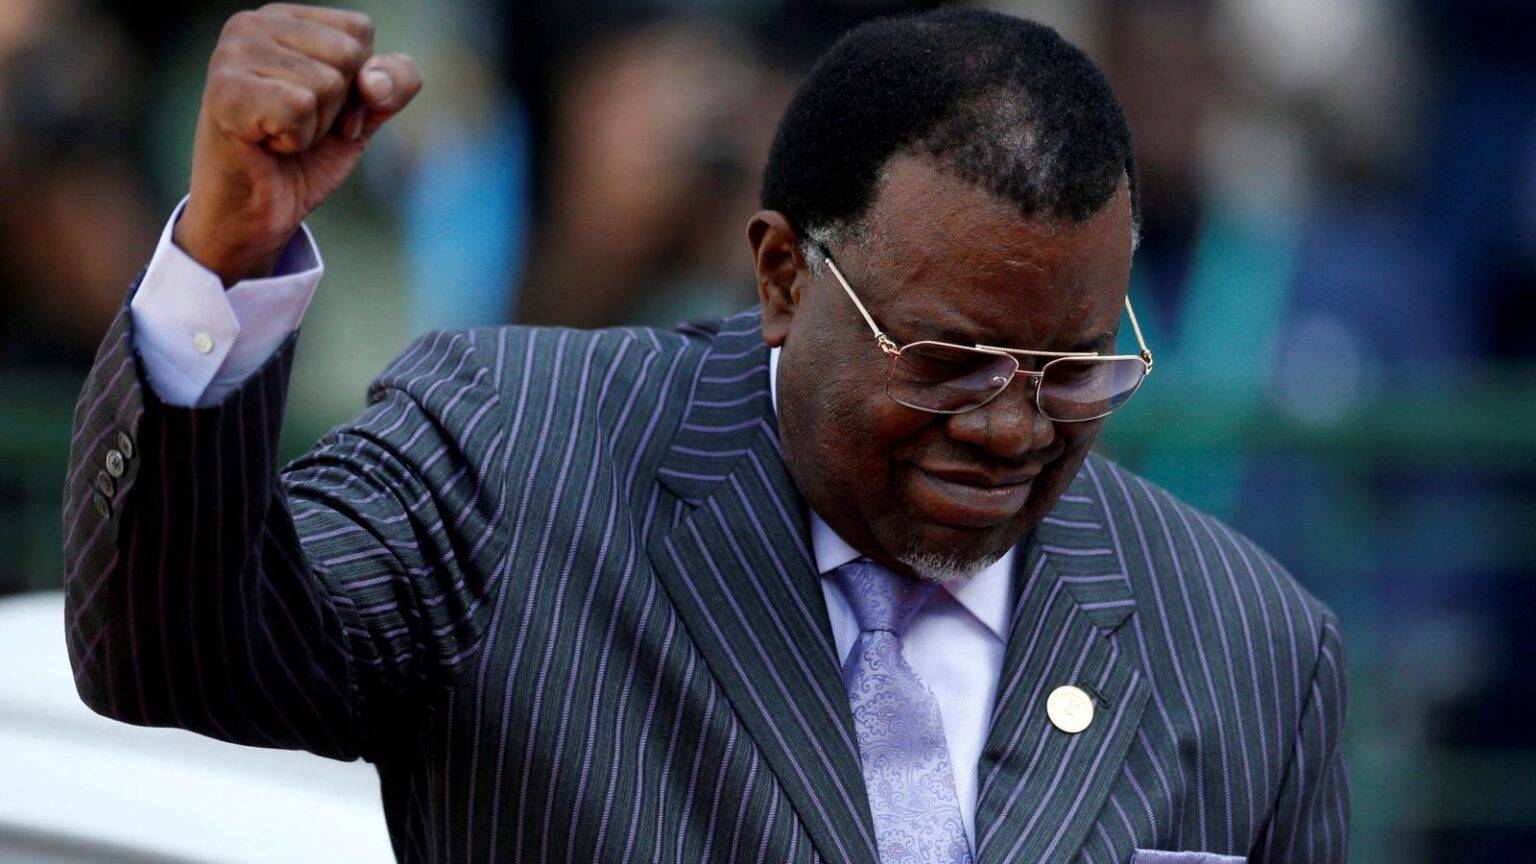 Hage Geingob: Namibia's president dies aged 82